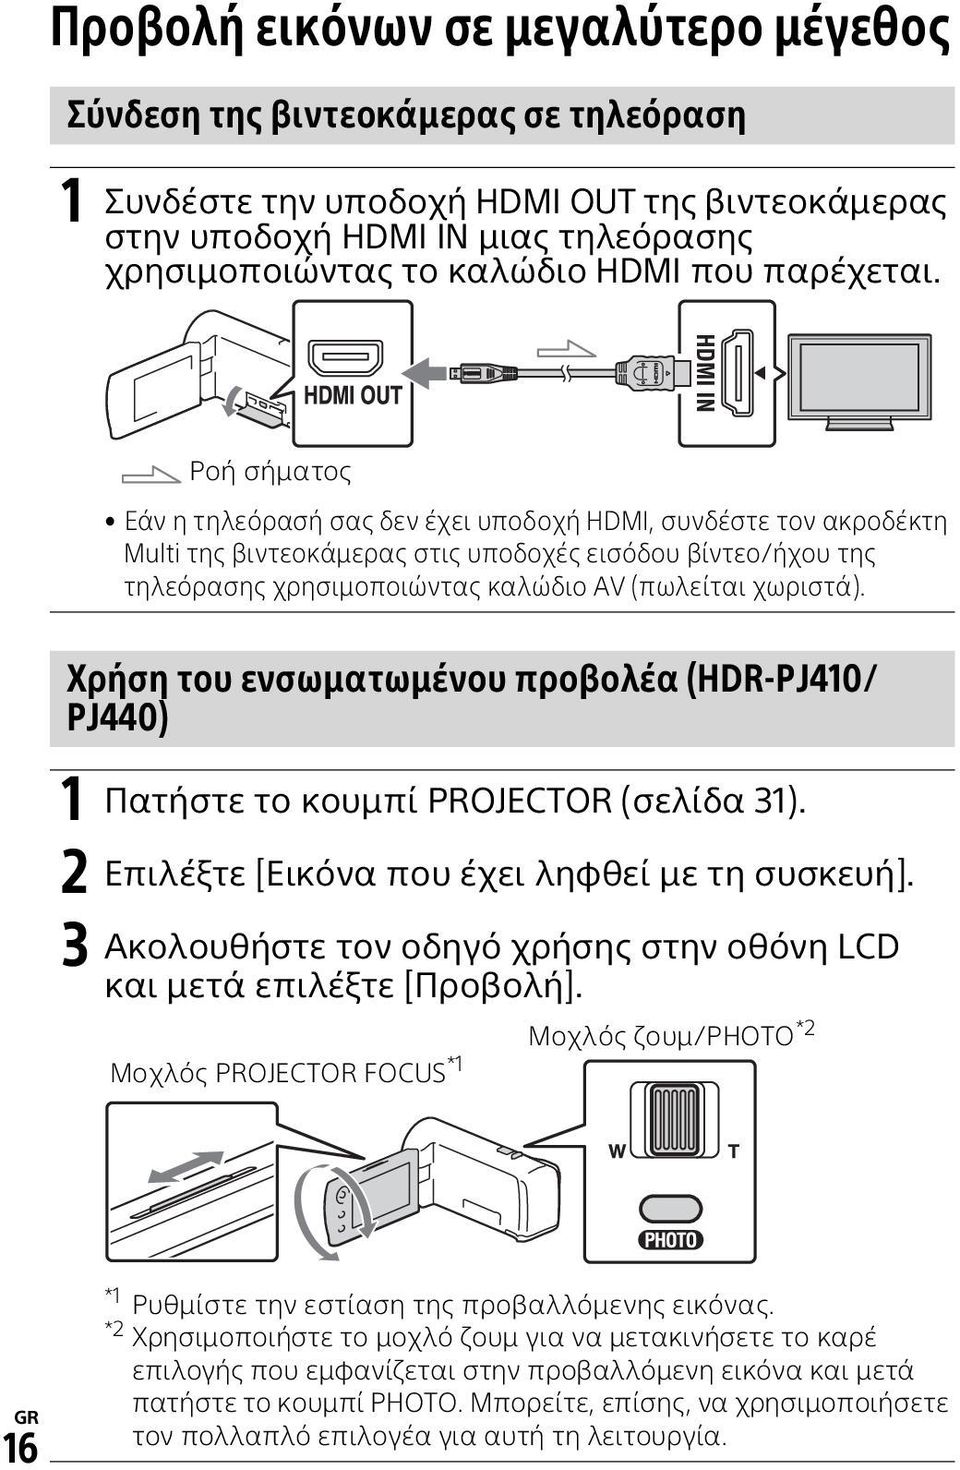 Ροή σήματος Εάν η τηλεόρασή σας δεν έχει υποδοχή HDMI, συνδέστε τον ακροδέκτη Multi της βιντεοκάμερας στις υποδοχές εισόδου βίντεο/ήχου της τηλεόρασης χρησιμοποιώντας καλώδιο AV (πωλείται χωριστά).